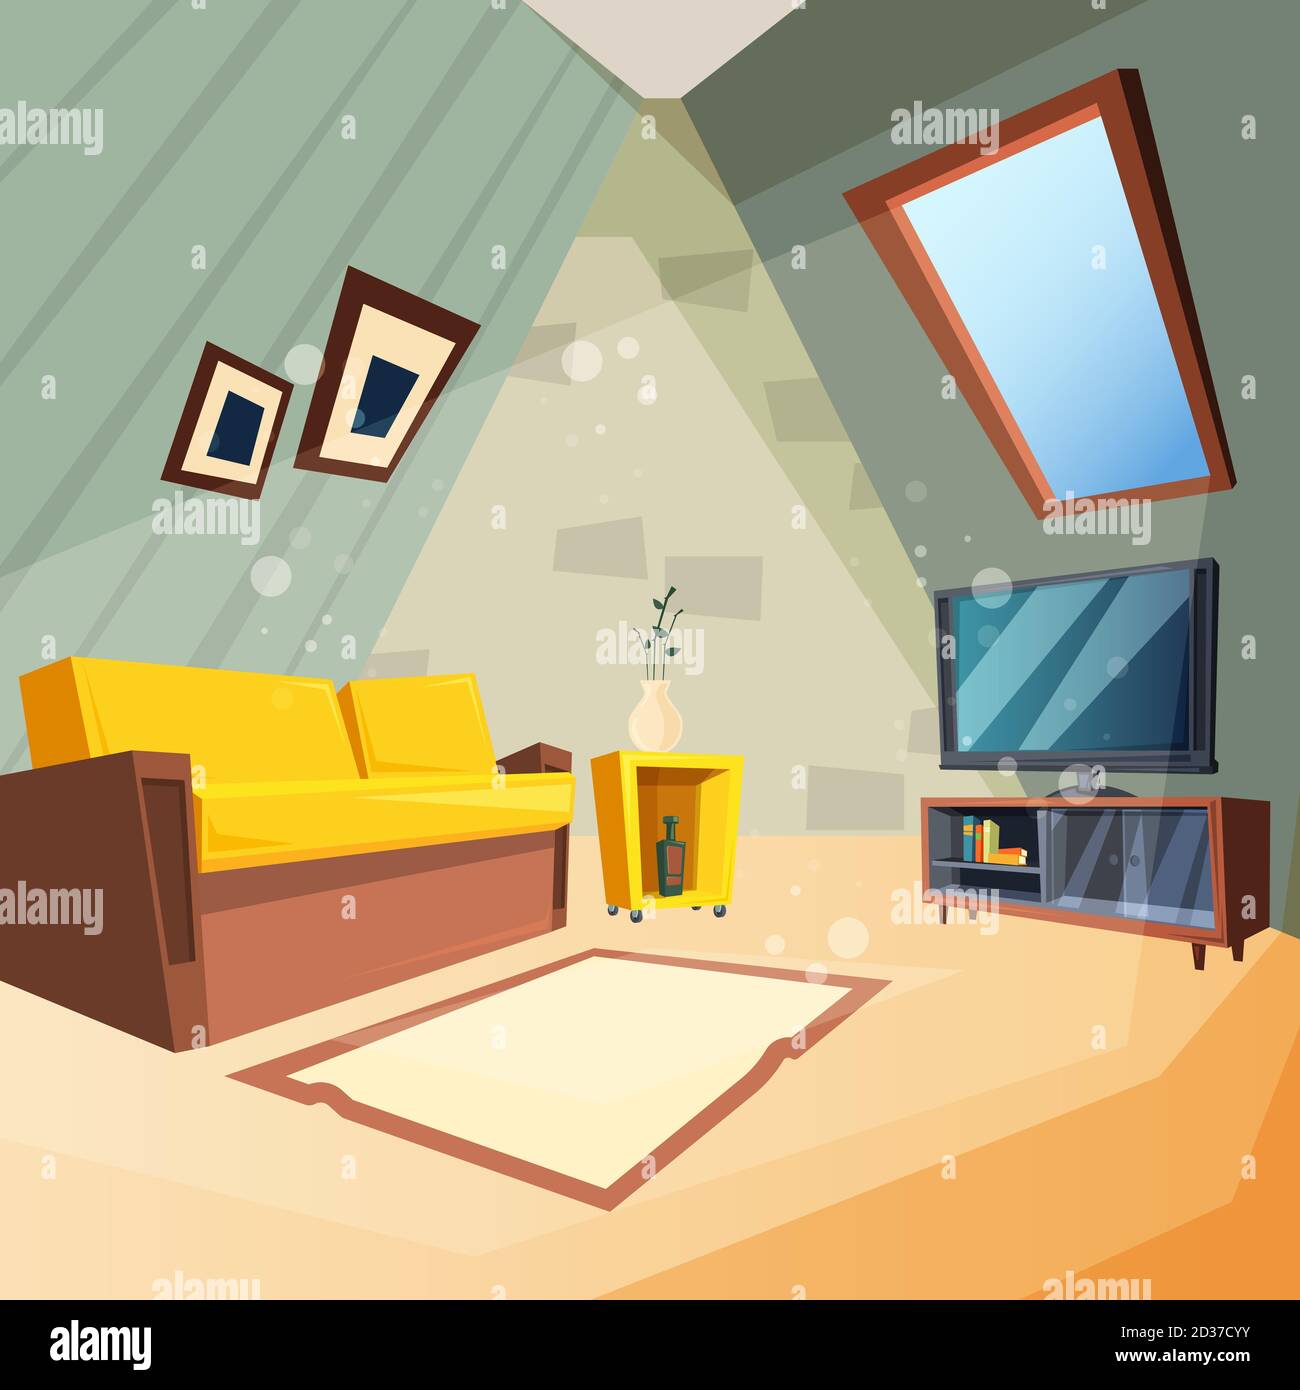 Grenier. Chambre à coucher pour enfants intérieur de la chambre grenier coin avec fenêtre sur le plafond image vectorielle dans le style de dessin animé Illustration de Vecteur